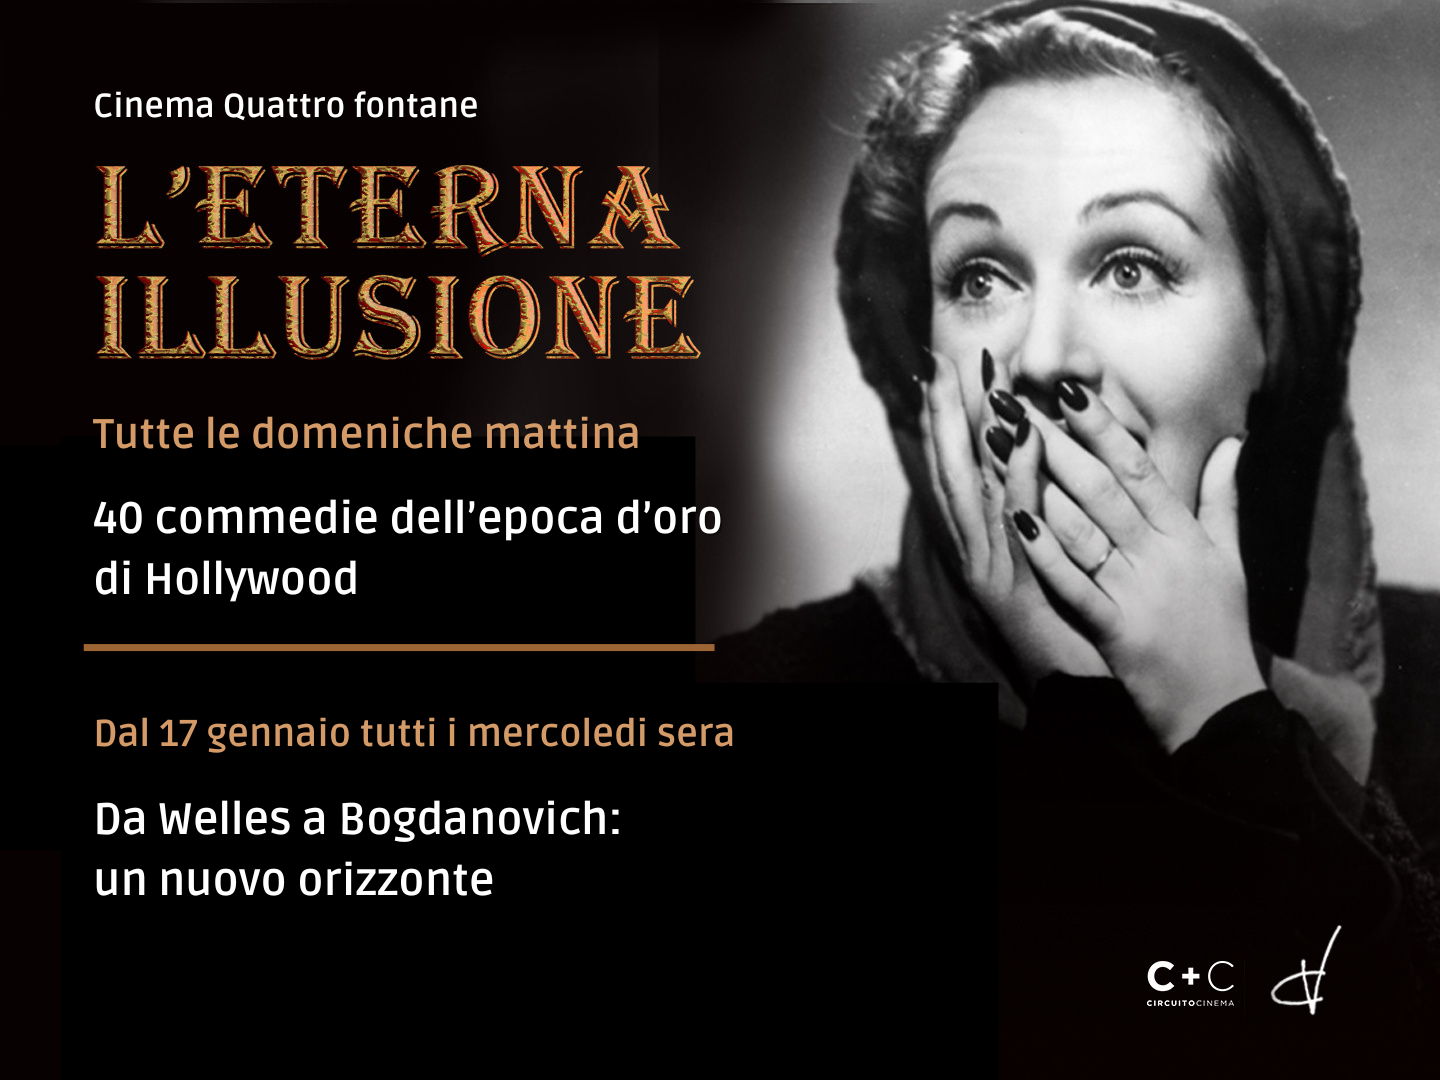 Successo per "L'eterna illusione" al Cinema Quattro Fontane di Roma che raddoppia e arriva anche il mercoledì sera